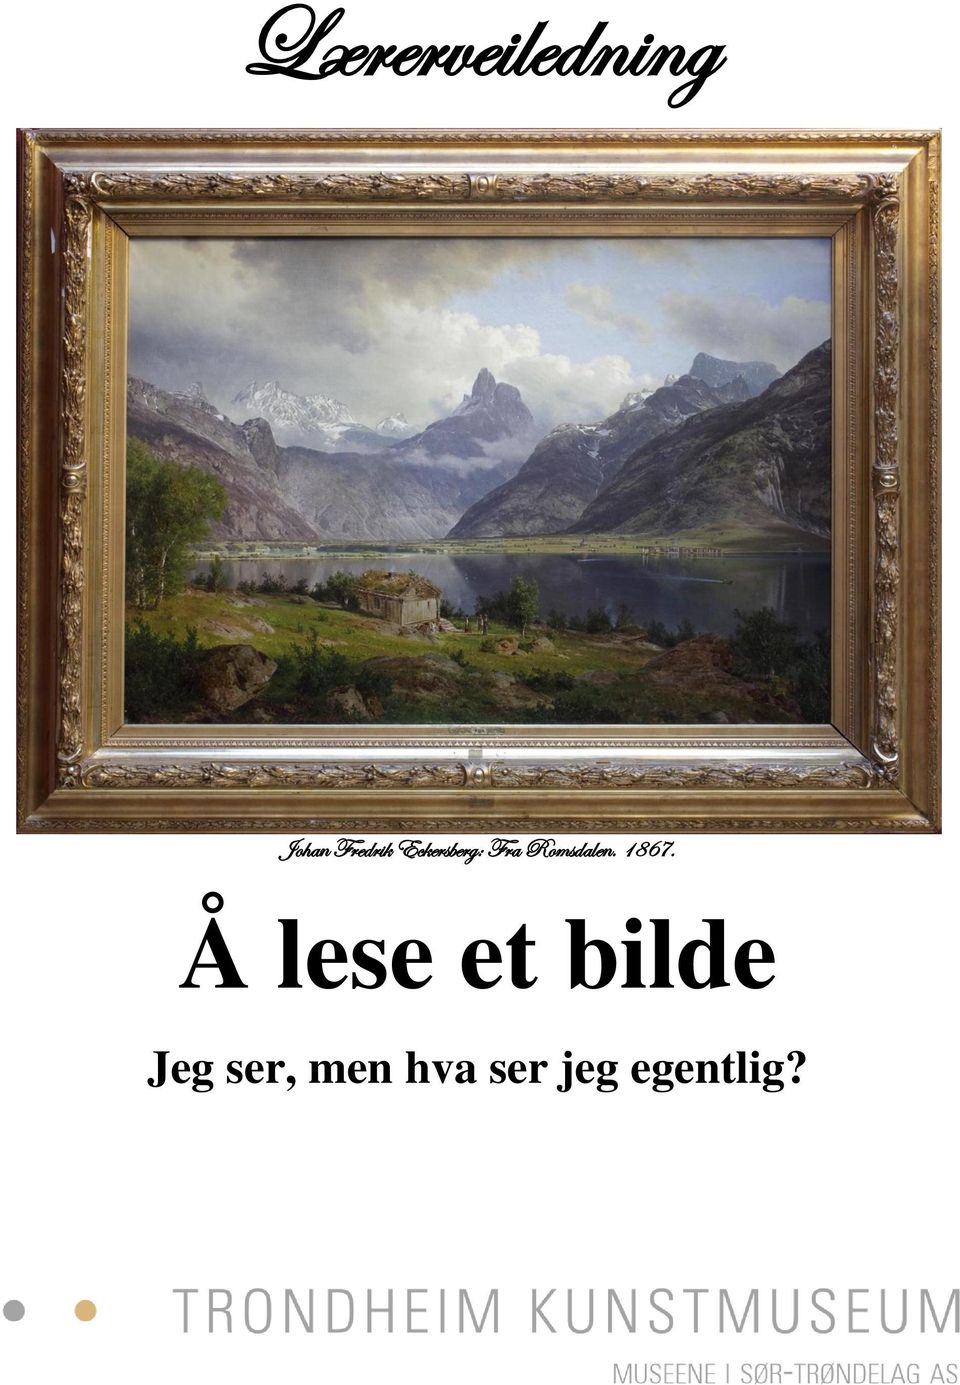 Romsdalen. 1867.